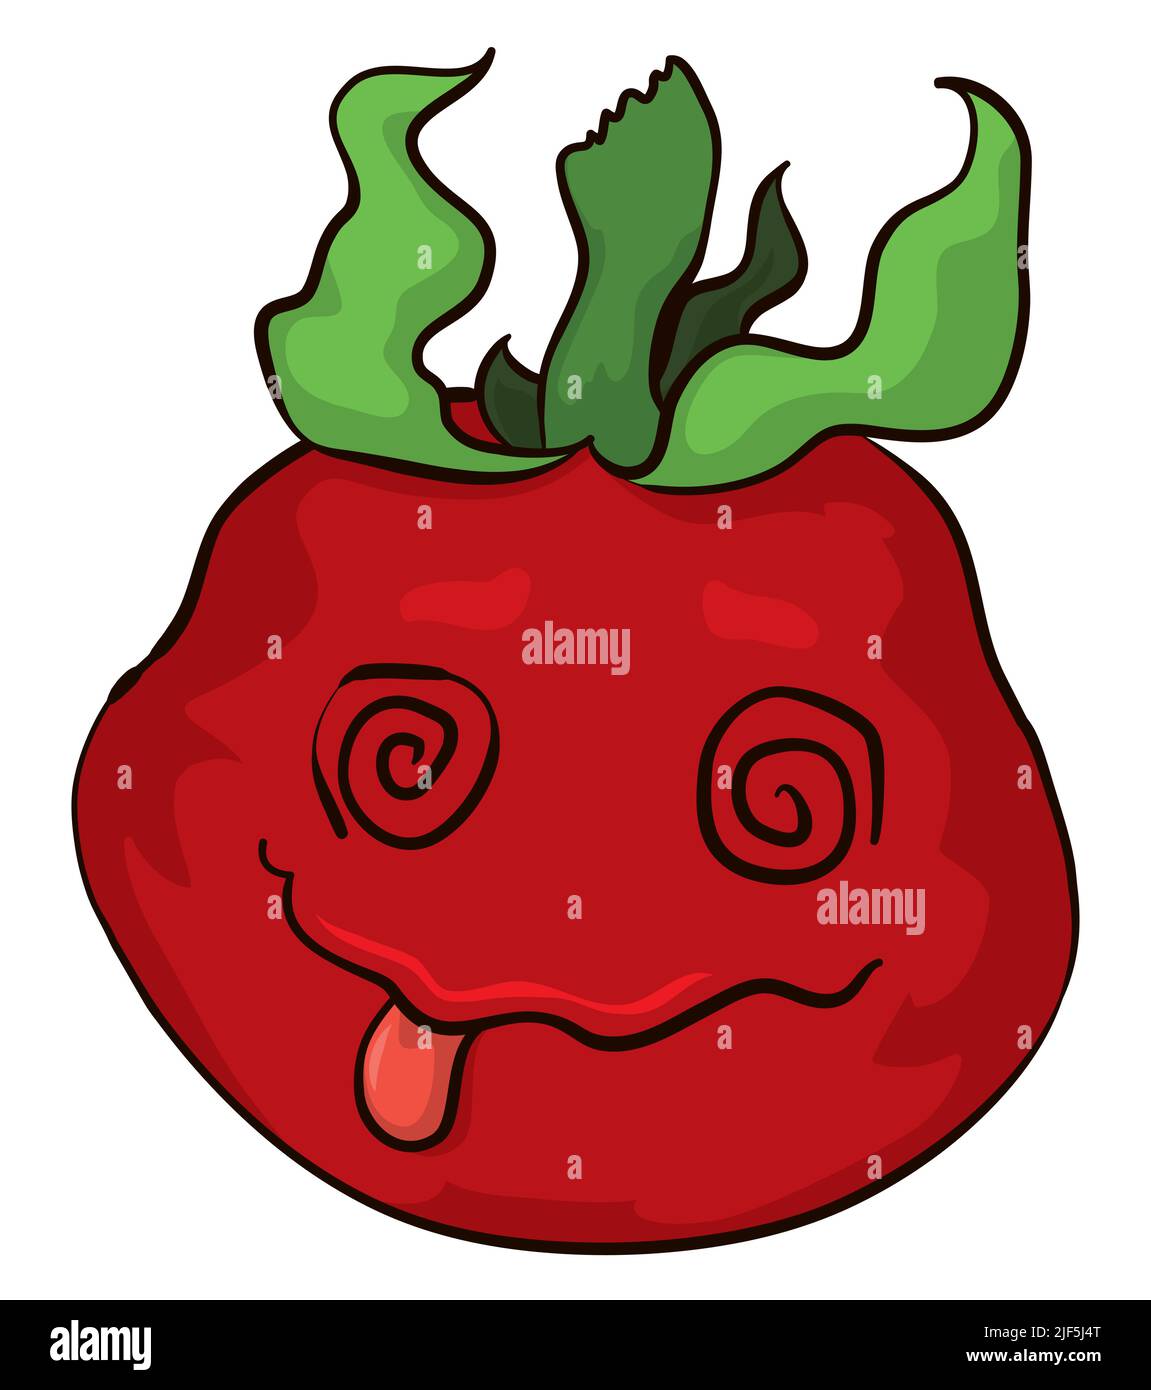 Caractère de tomate étourdi de style dessin animé avec les yeux comme les spirales et la langue dehors. Illustration de Vecteur